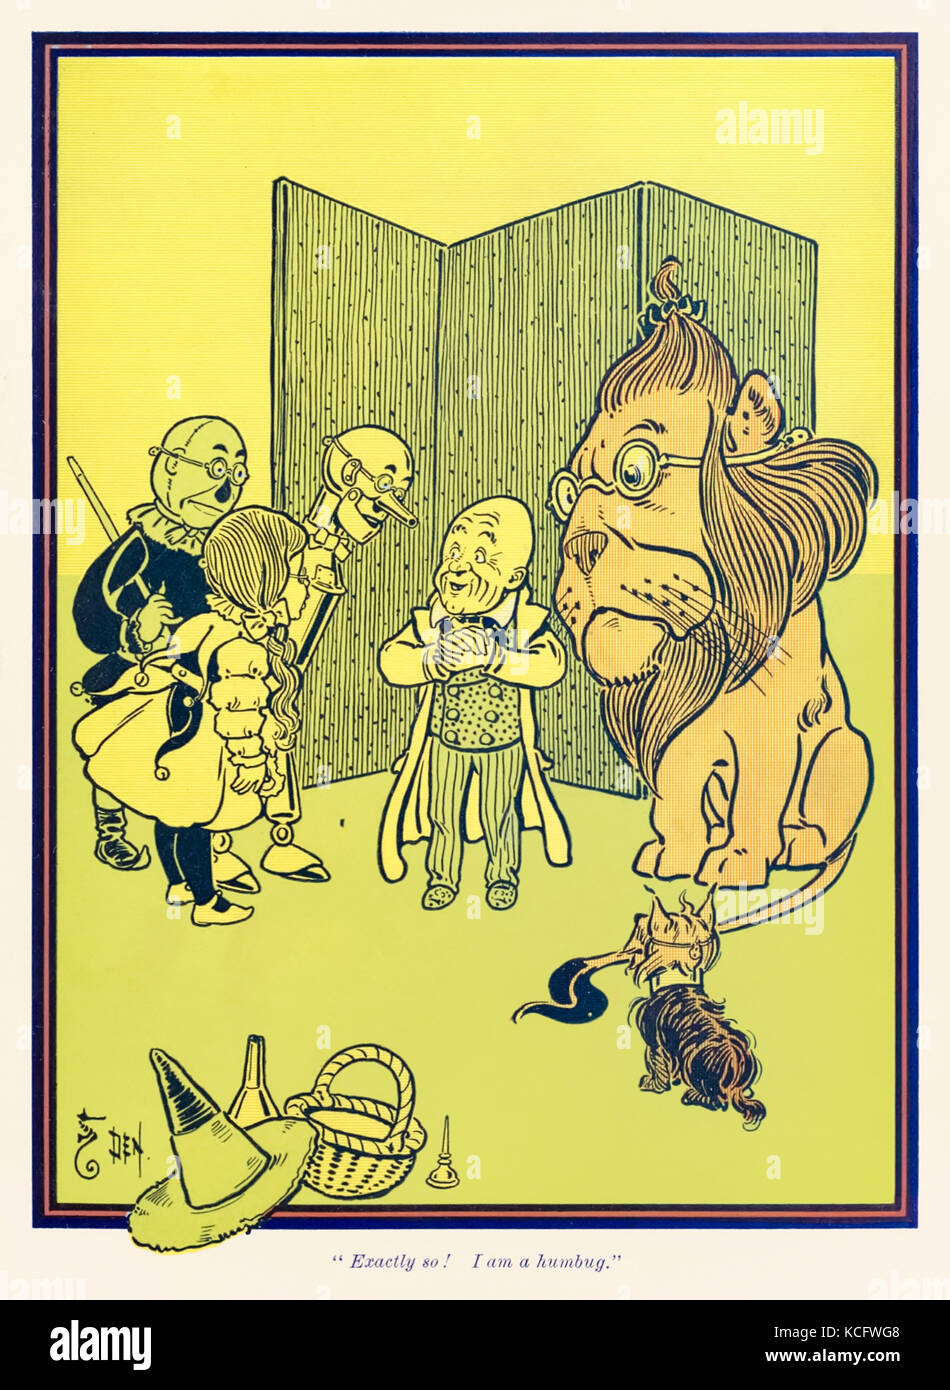 "Genau so! Ich bin ein dummes Zeug." aus "Der Zauberer von Oz" von L.Frank Baum (1856-1919) mit Bildern von W. W. Denslow (1856-1915). Weitere Informationen finden Sie unten. Stockfoto